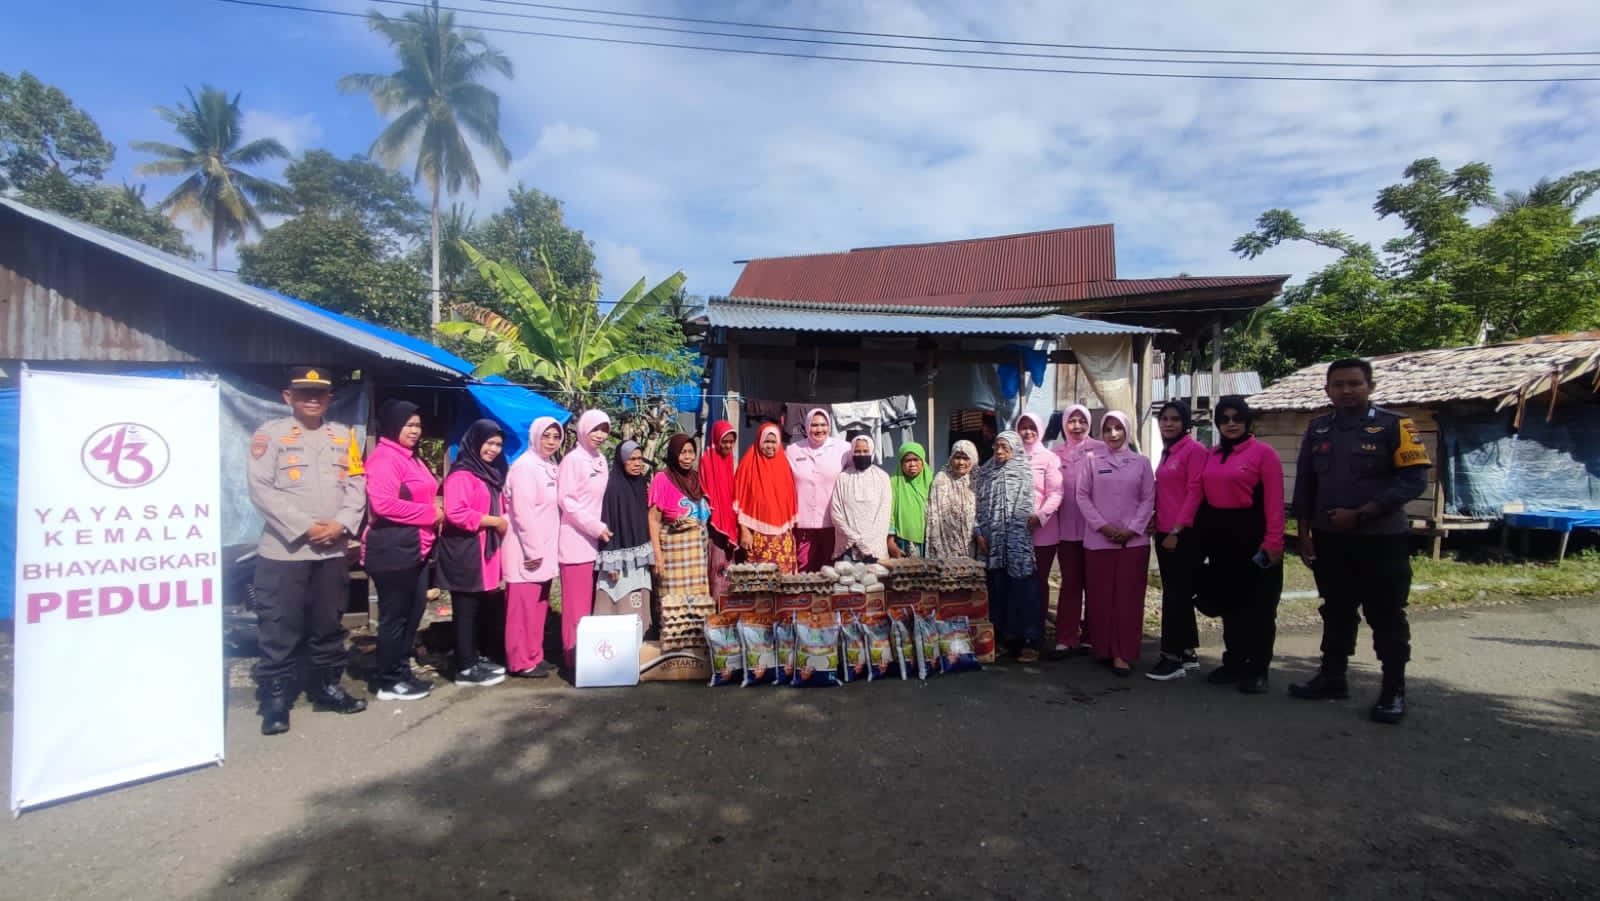 Yayasan Kemala Bhayangkari Kota Mamuju Salurkan Bansos Peduli Kepada Warga Kurang Mampu